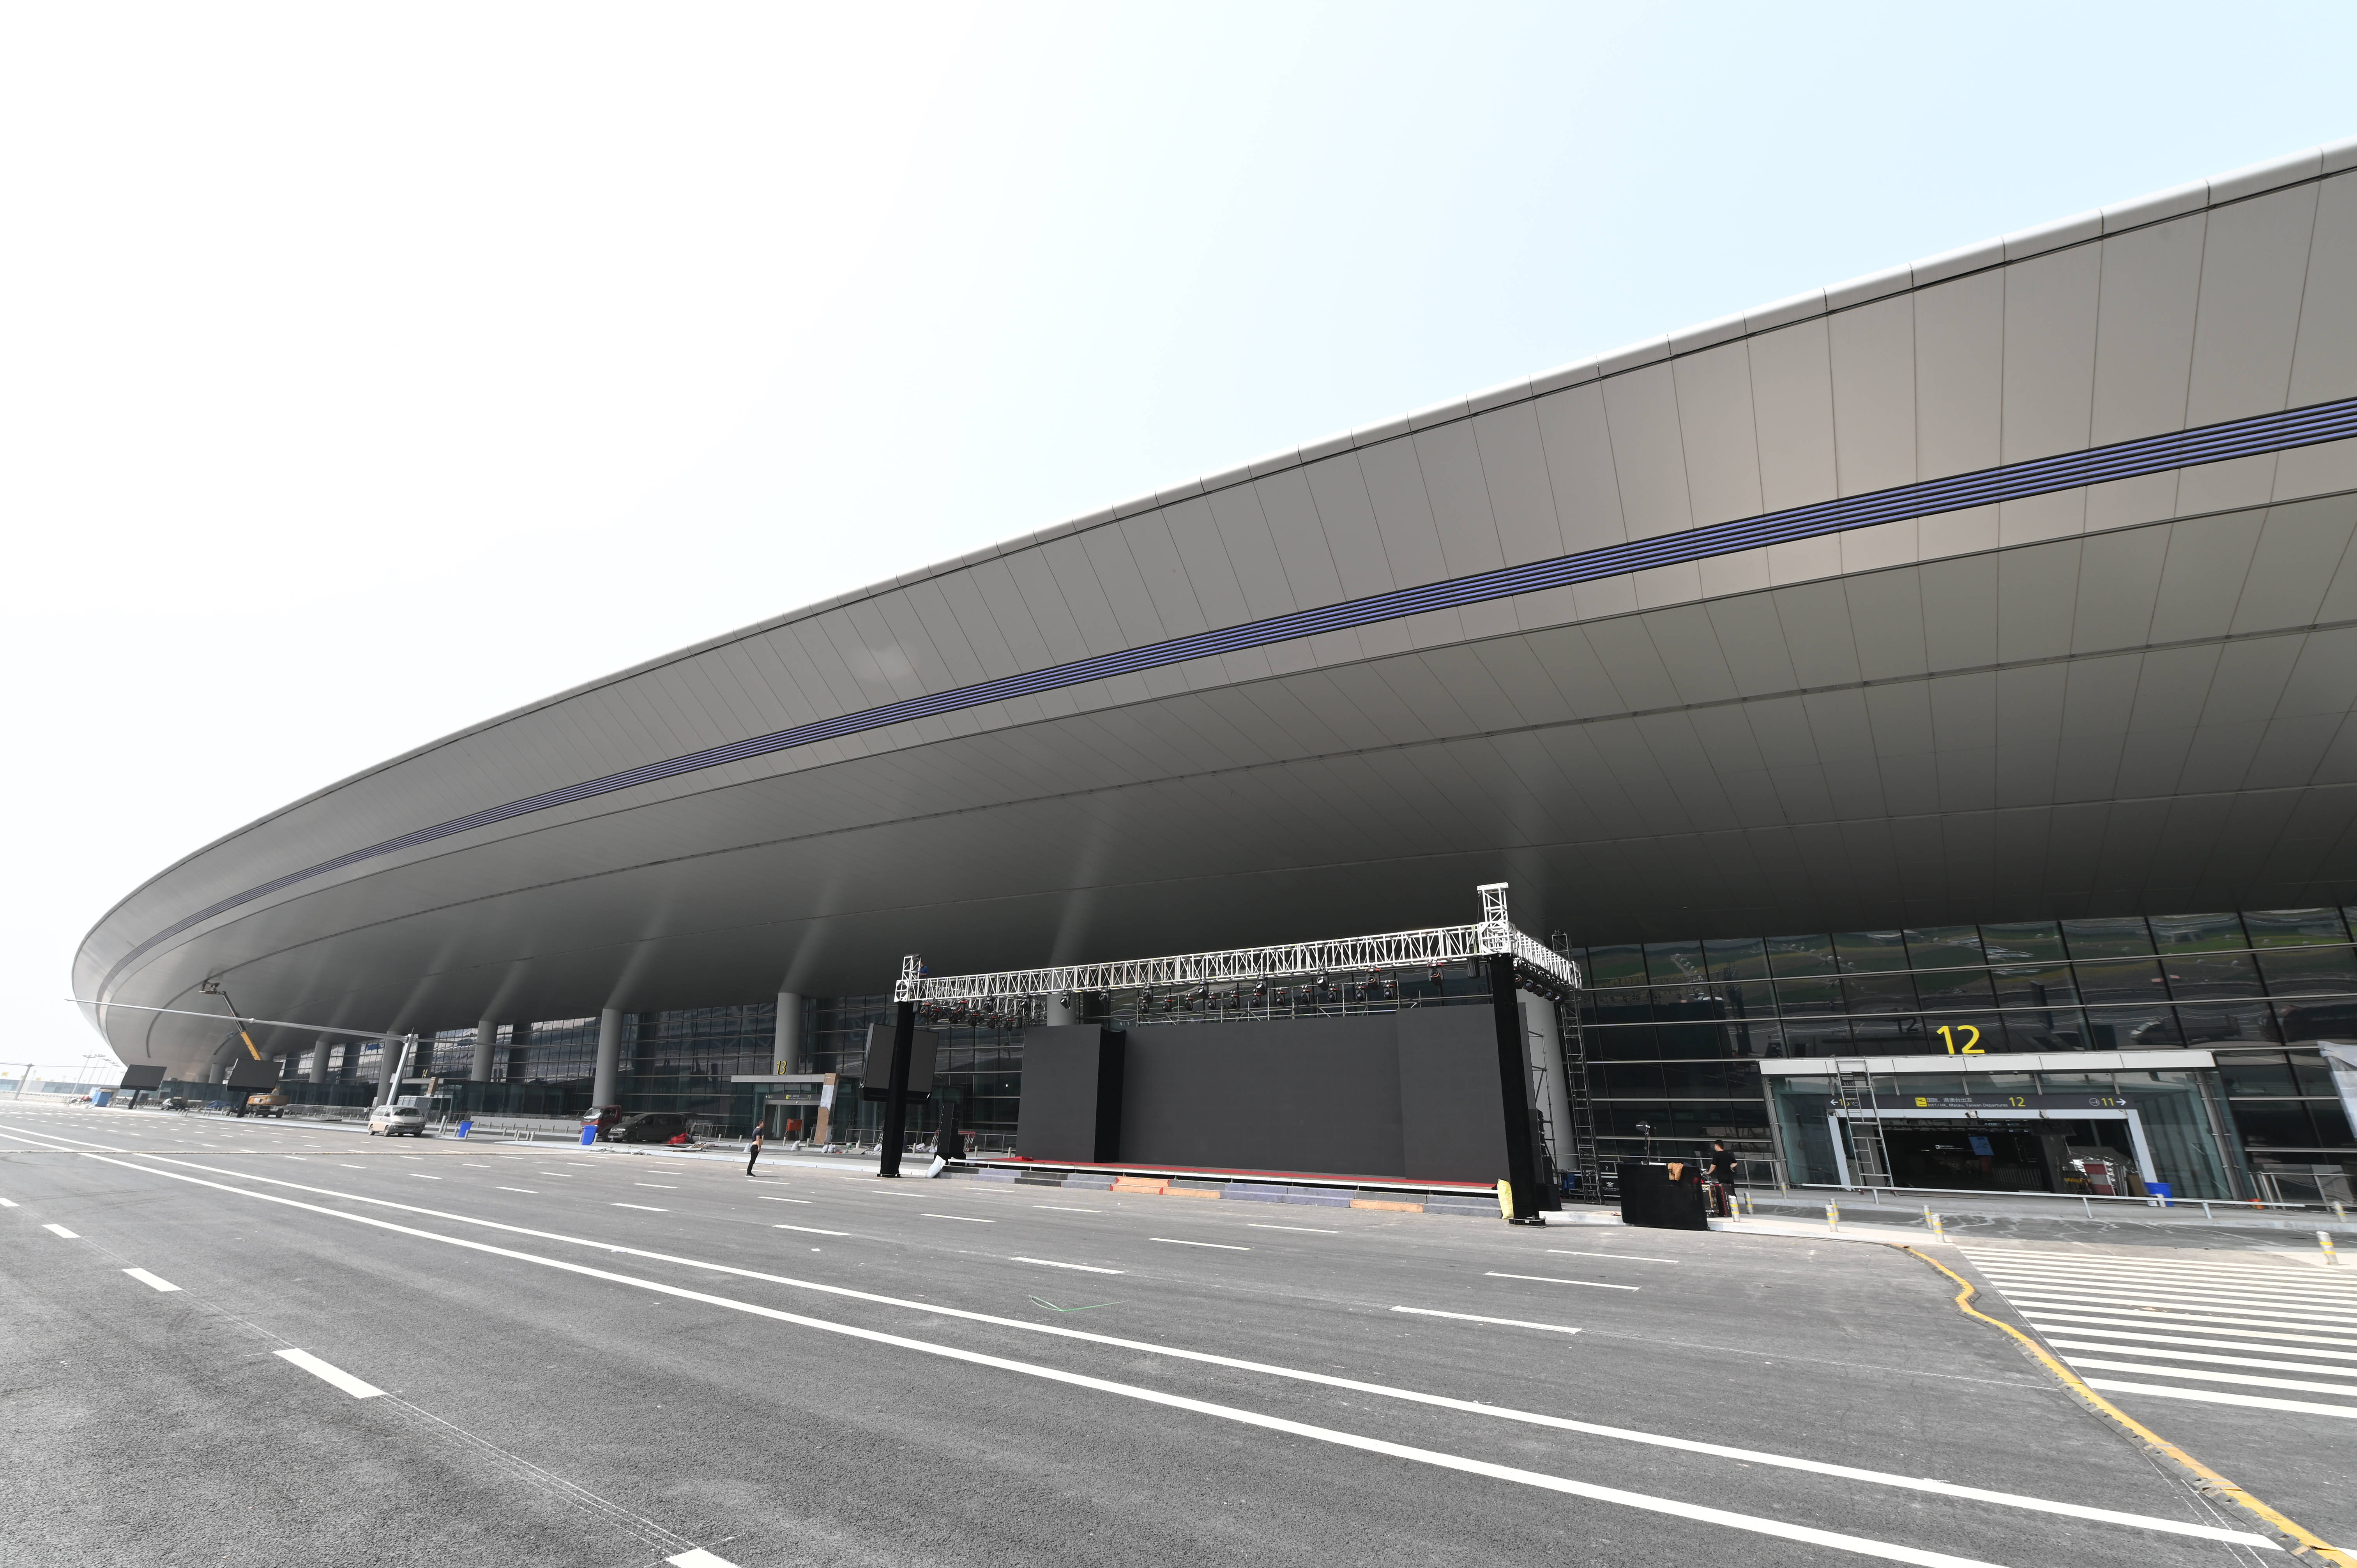 "天府国际机场拥有多种交通方式,t1,t2航站楼中间还建有综合交通换乘